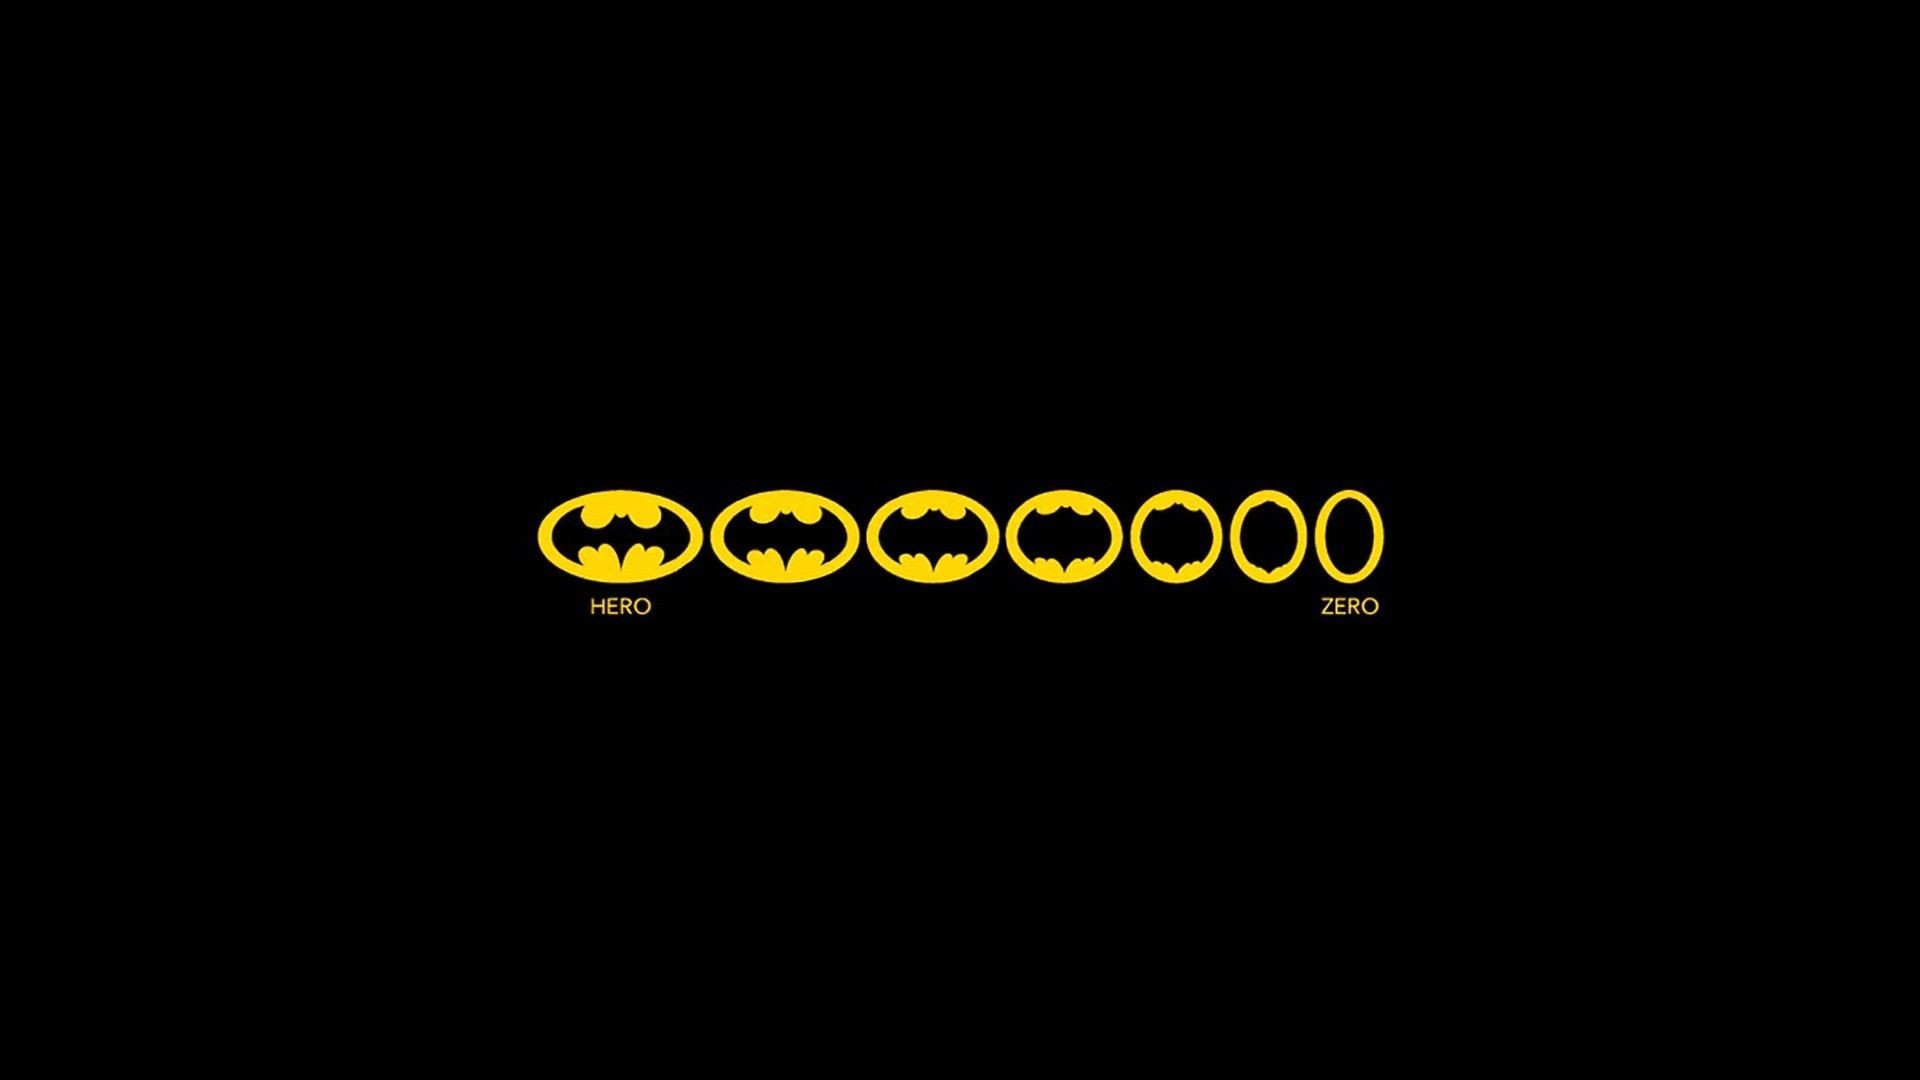 1920x1080 ââTAP AND GET THE FREE APP! Art Creative Batman Movie Superhero .